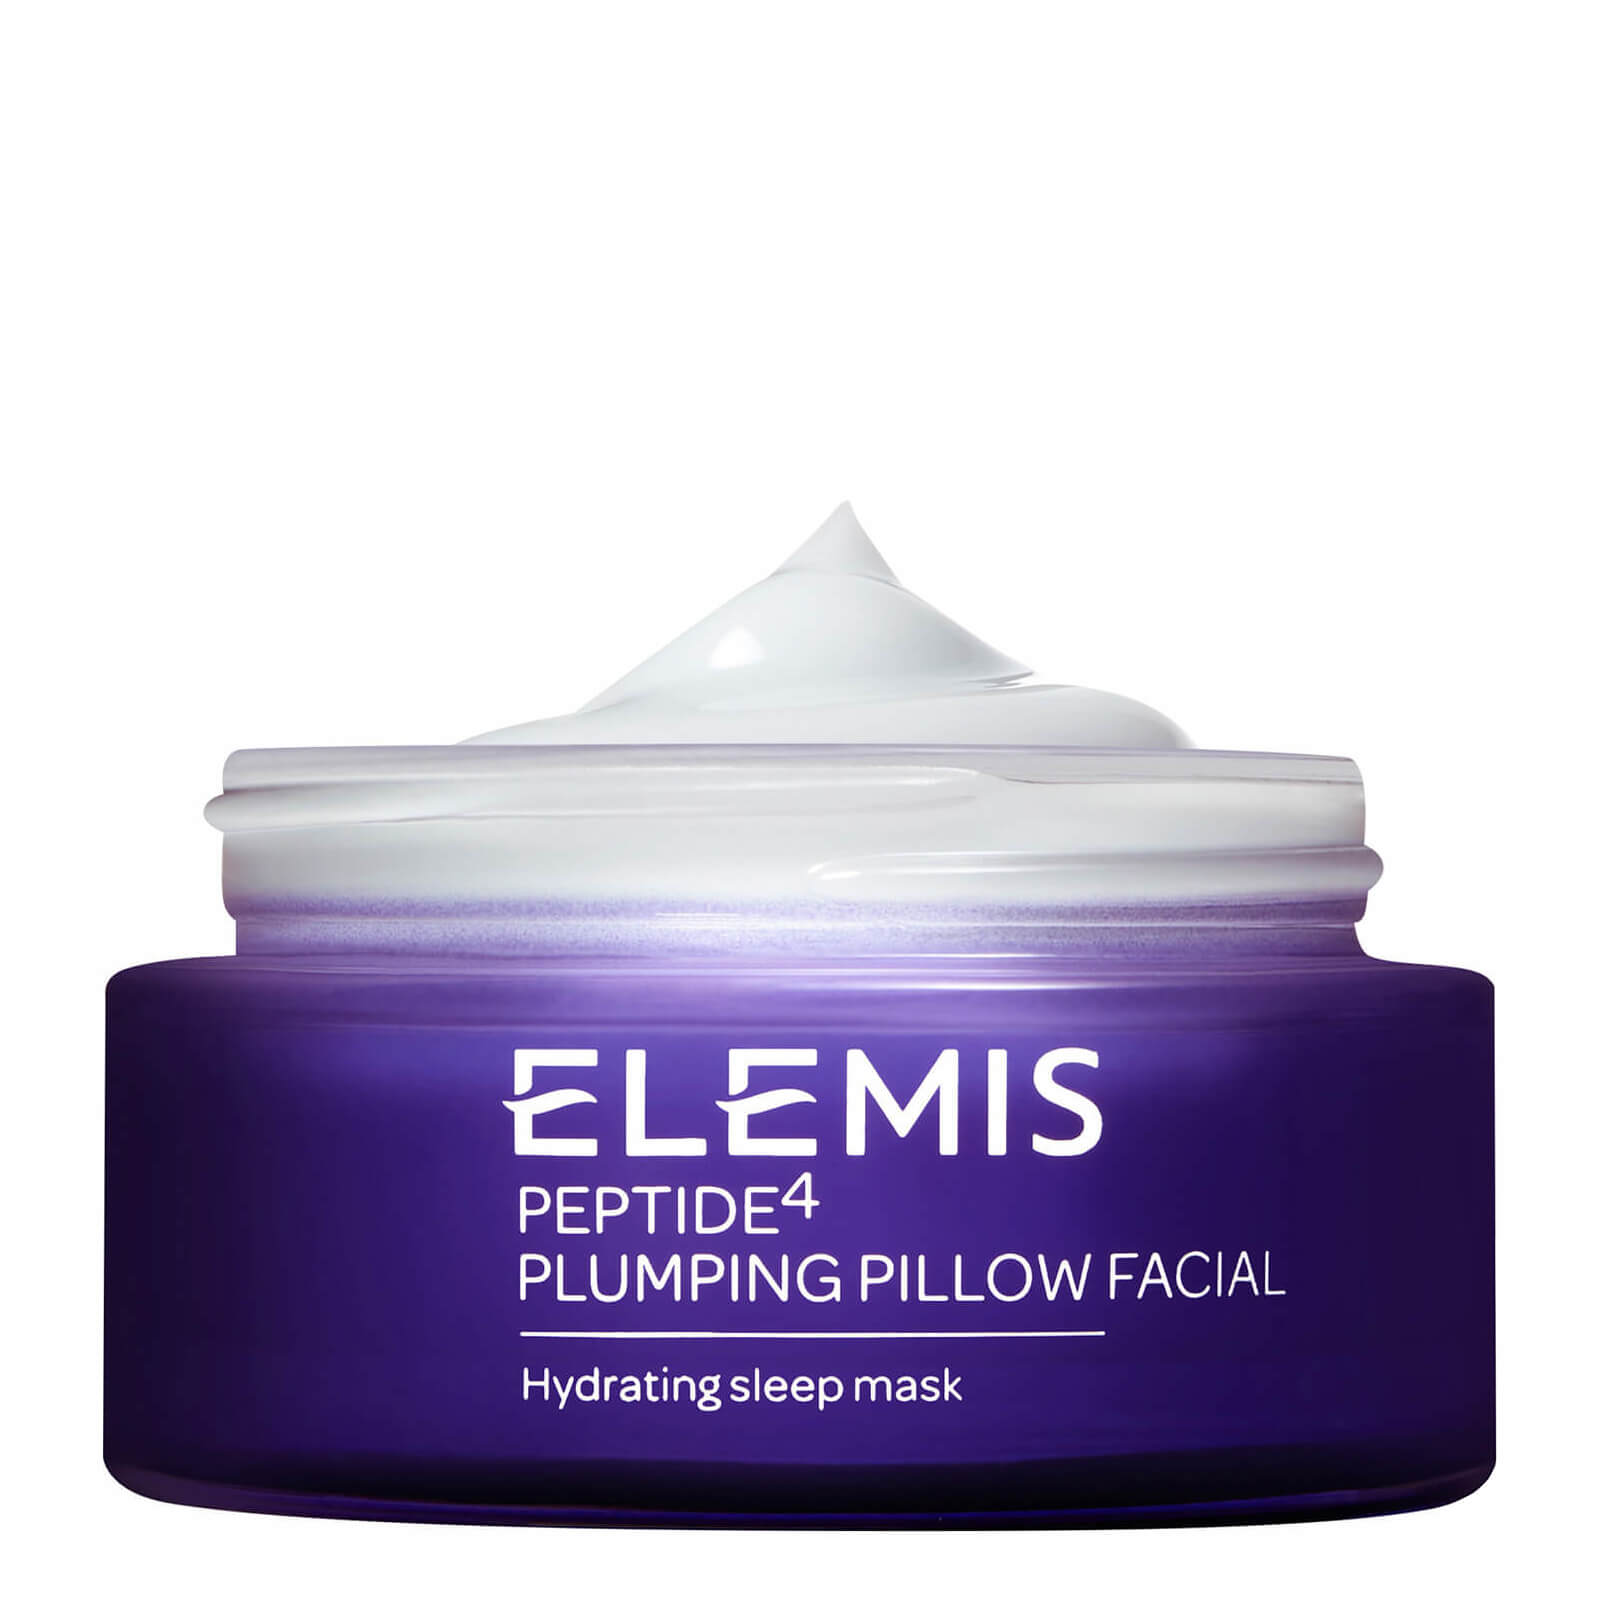 Peptide⁴ Plumping Pillow Facial